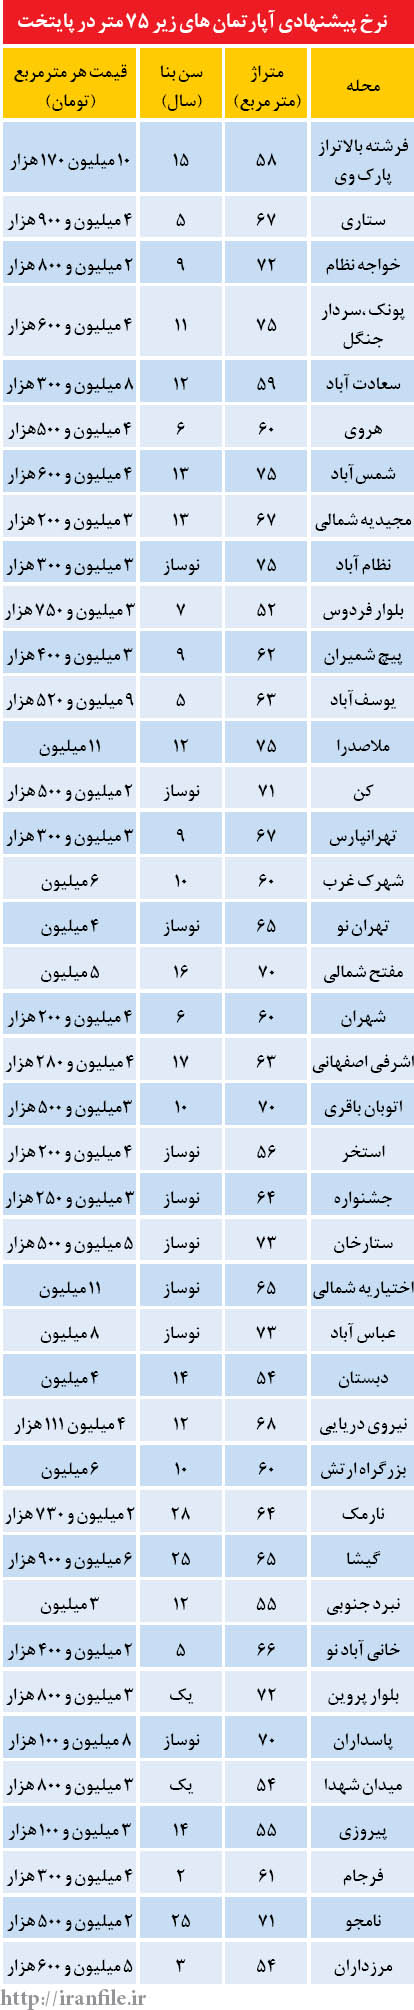 قیمت آپارتمان های زیر 75 متر در تهران (جدول)